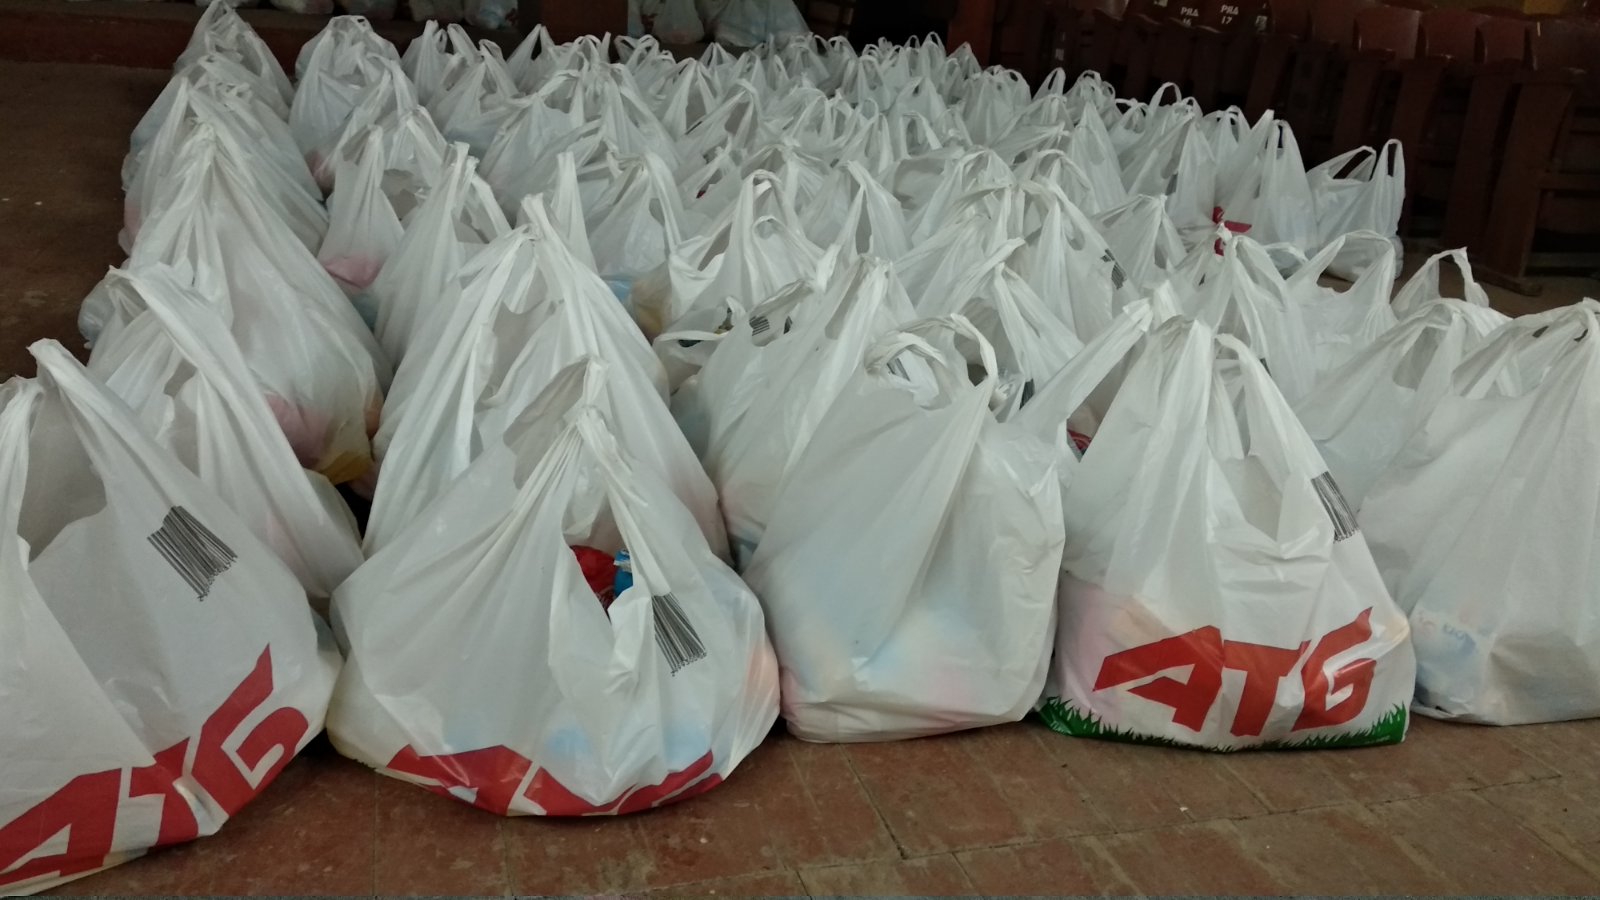 Благотворительная акция "Благо Даря" в Килии вступила в реализацию - люди получают соцпомощь от горсовета и спонсоров